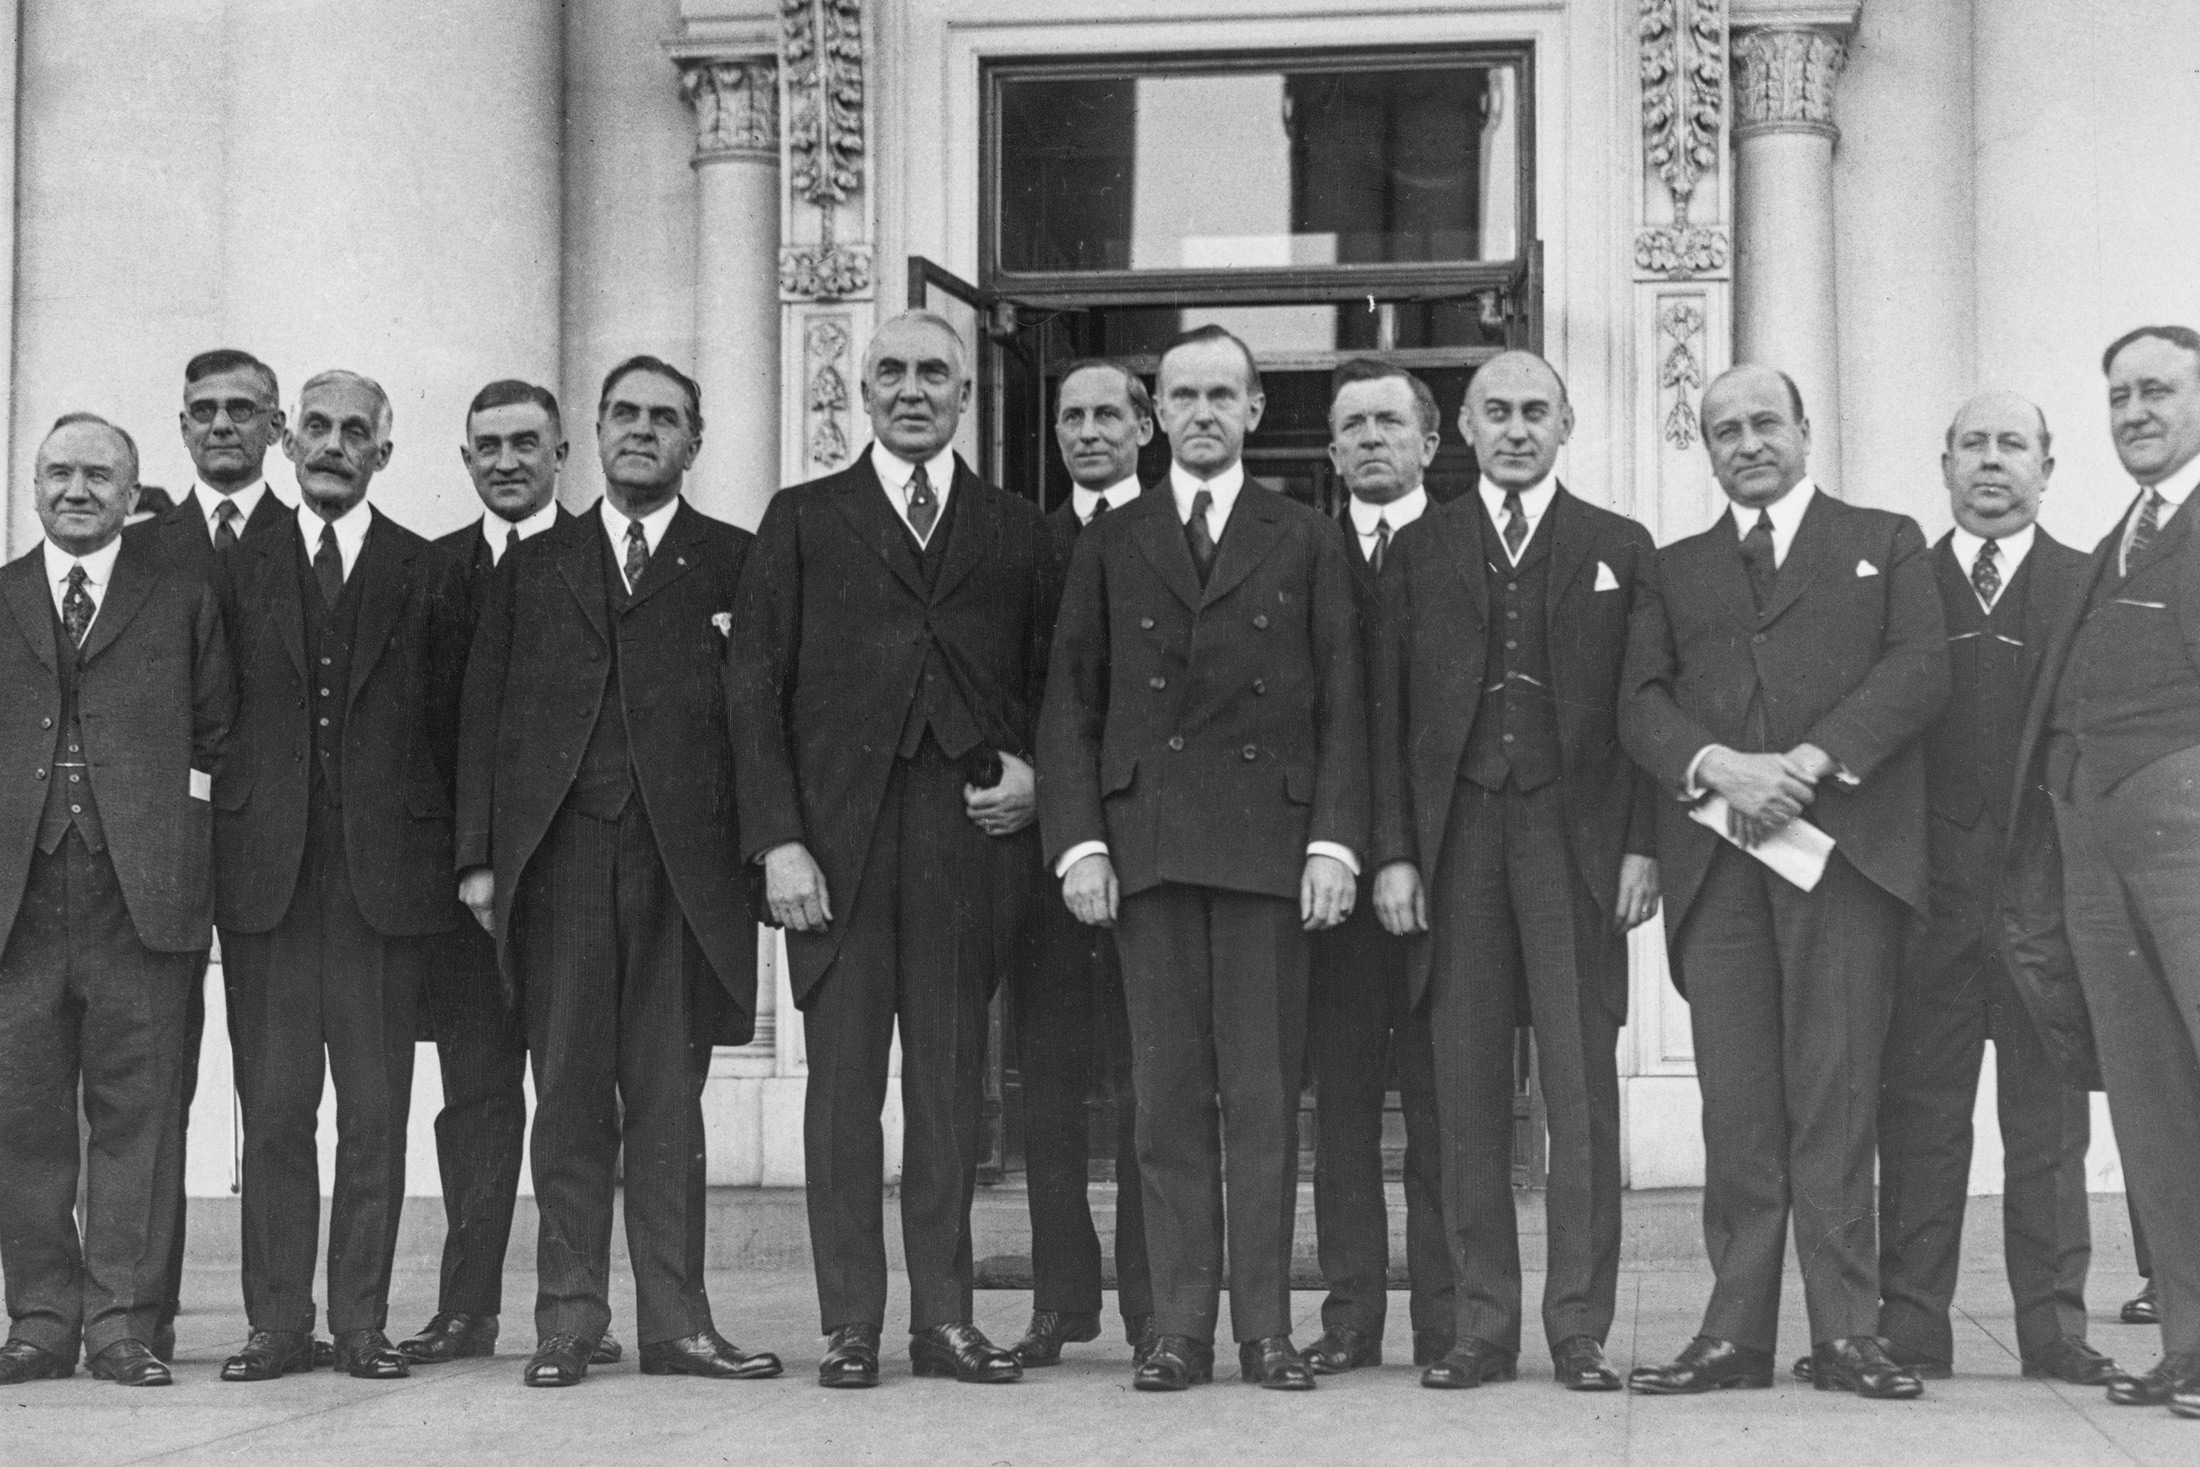 Doanh nhân và chính trị gia Andrew Mellon (1855–1937) (thứ 3 từ trái sang) chụp ảnh cùng với các luật sư và chính trị gia Hoa Kỳ khác sau một cuộc họp tại Toà Bạch Ốc năm 1923. Ông Mellon giữ chức bộ trưởng ngân khố Hoa Kỳ từ năm 1921 đến năm 1932. (Ảnh: Keystone View Company/FPG/Archive Photos/Getty Images)